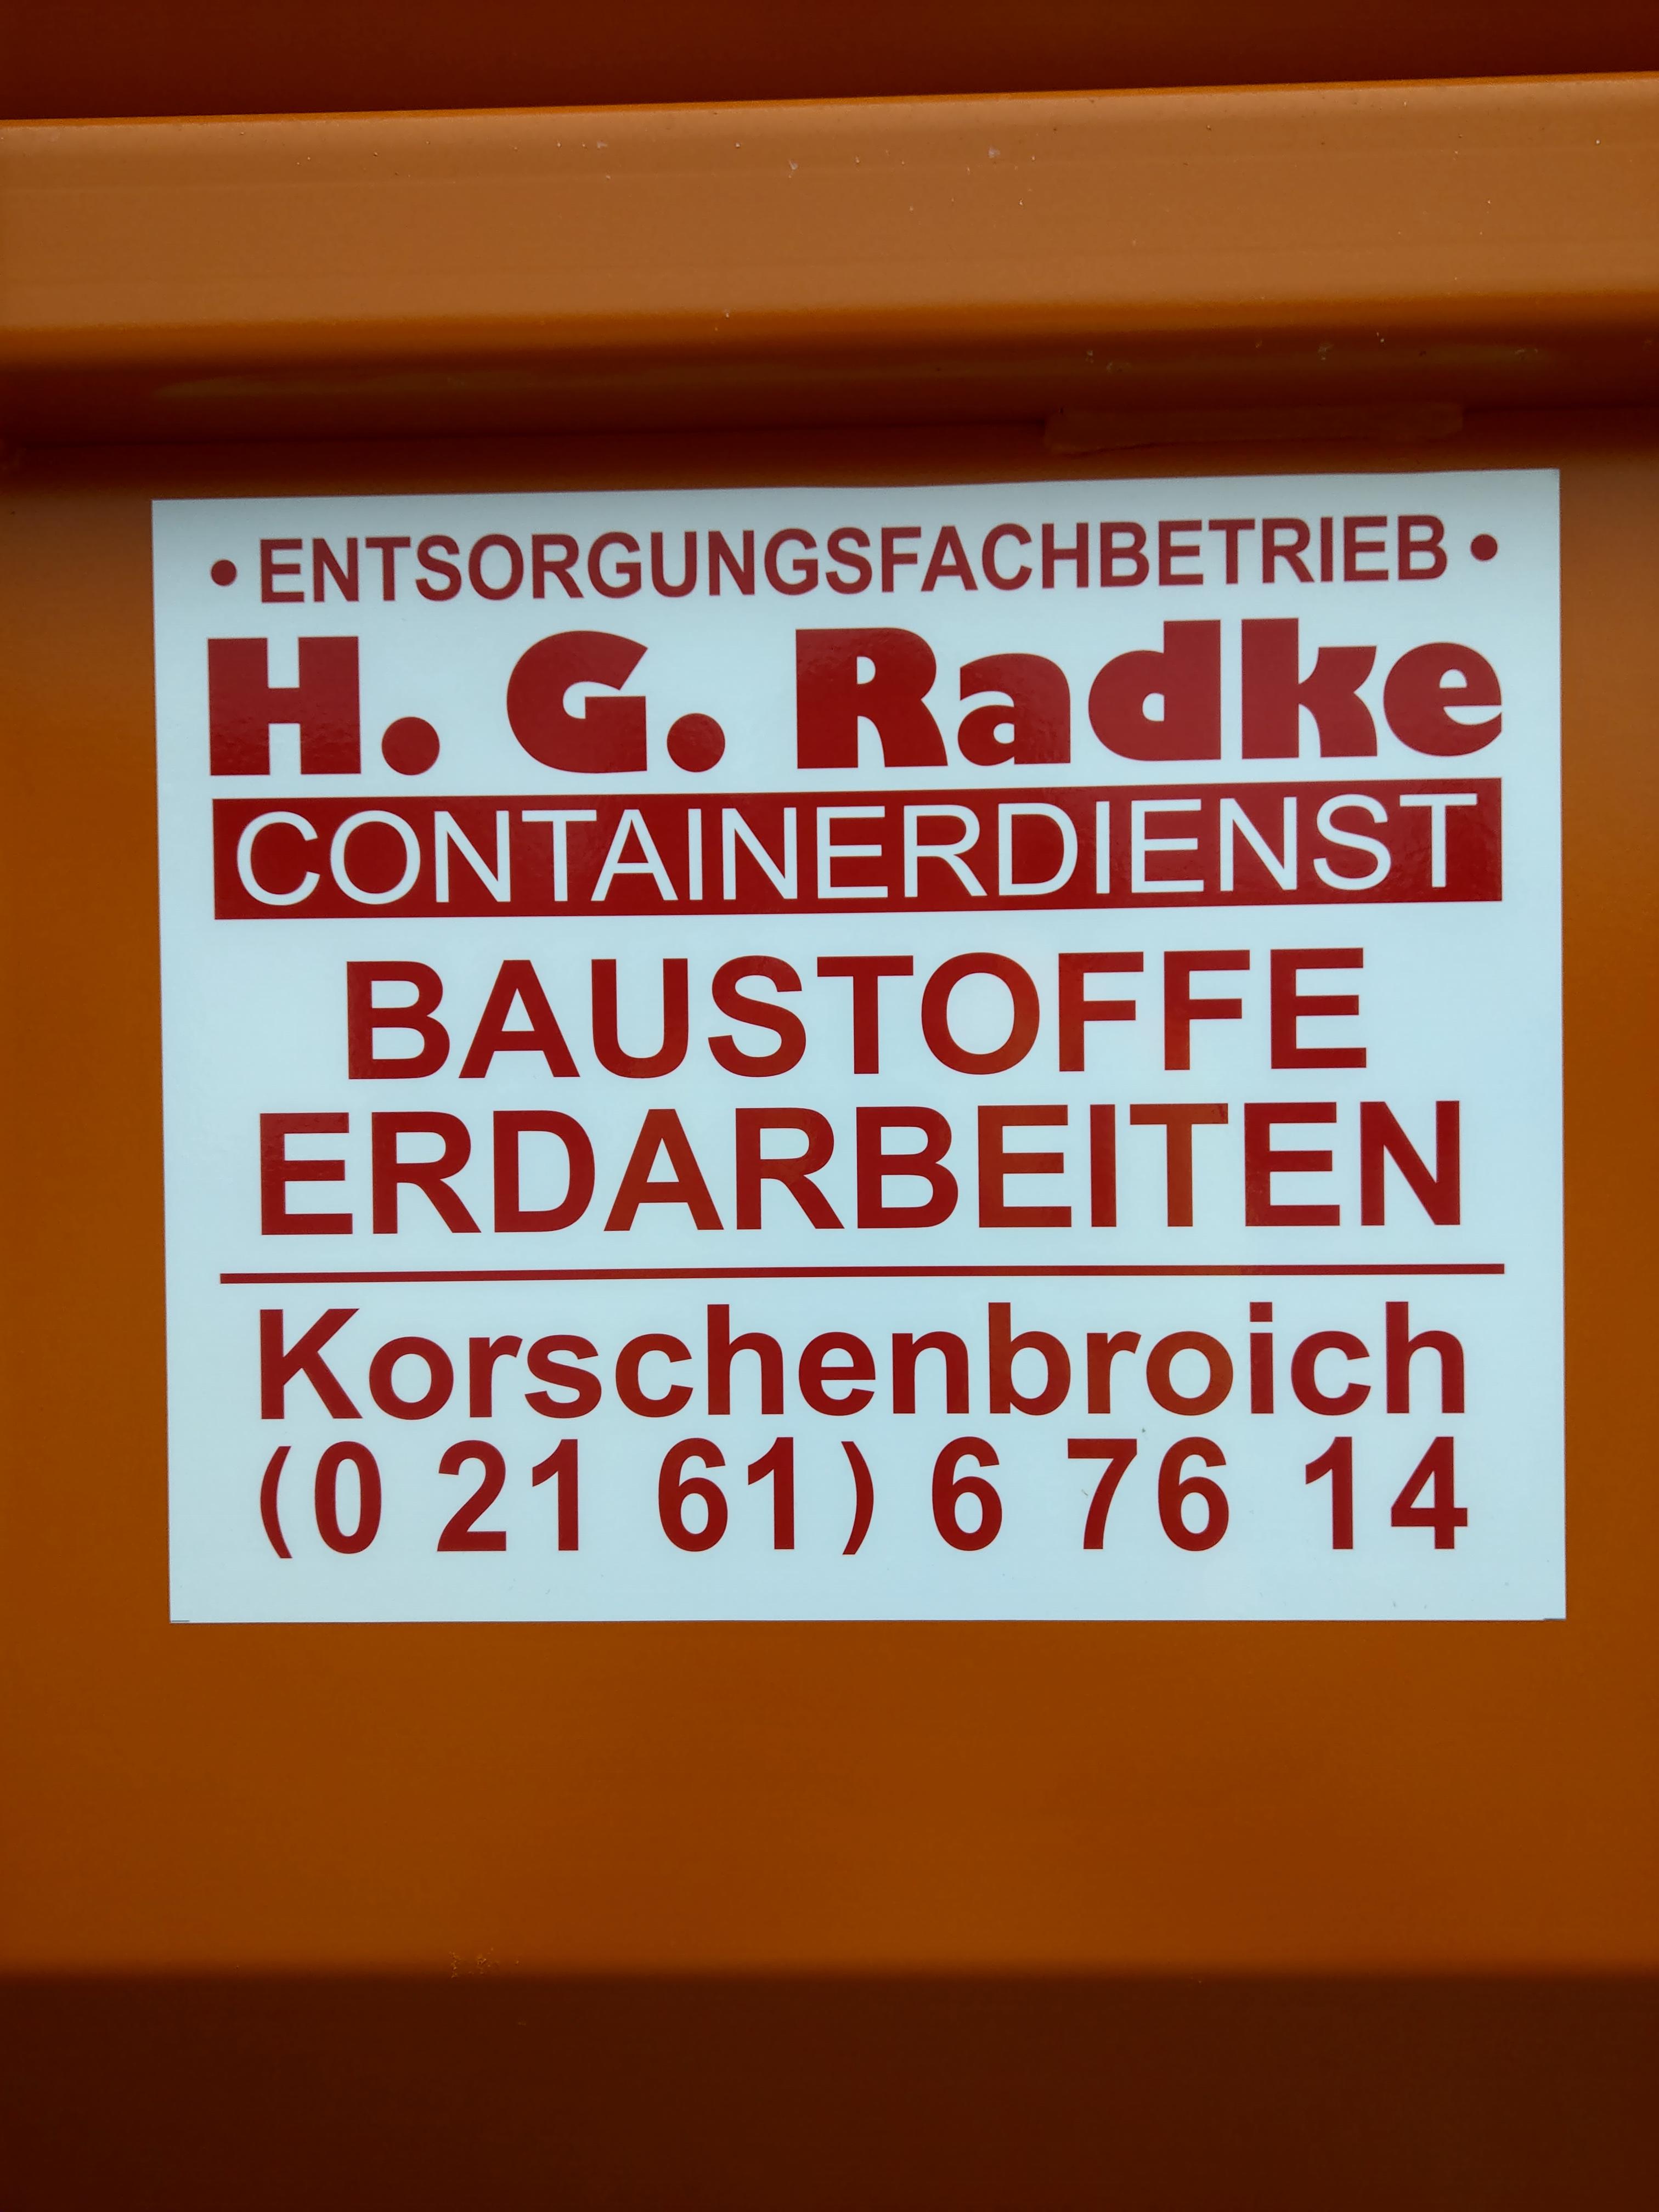 Bilder H.G.Radke Containerdiest-Baustoffe-Erdarbeiten